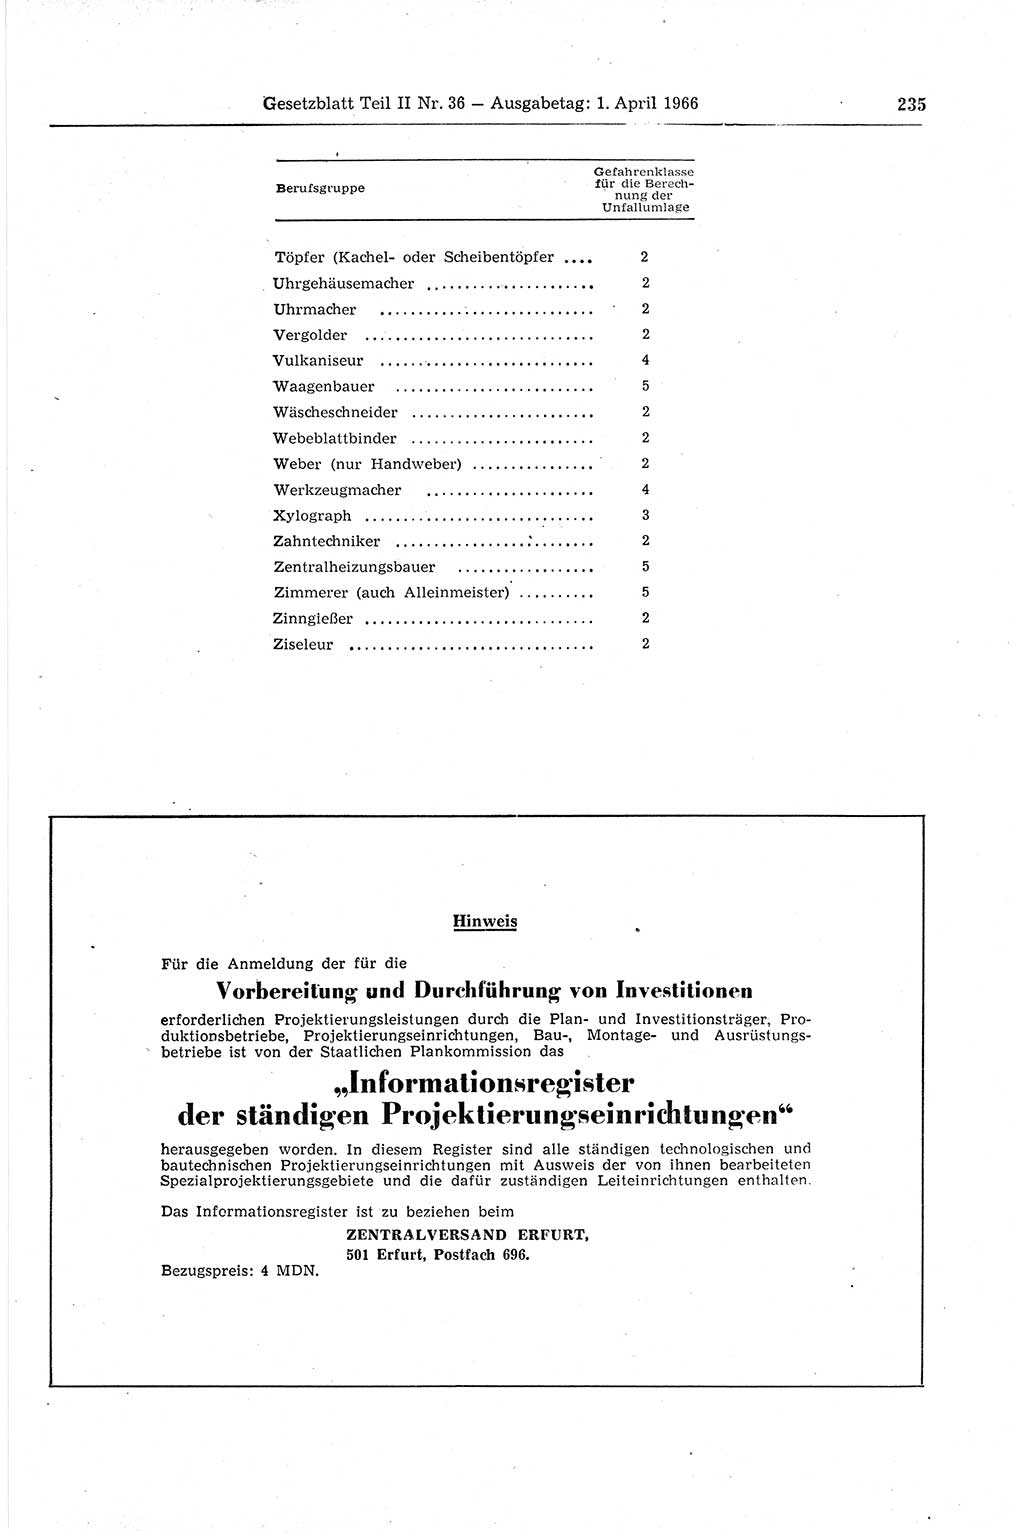 Gesetzblatt (GBl.) der Deutschen Demokratischen Republik (DDR) Teil ⅠⅠ 1966, Seite 235 (GBl. DDR ⅠⅠ 1966, S. 235)